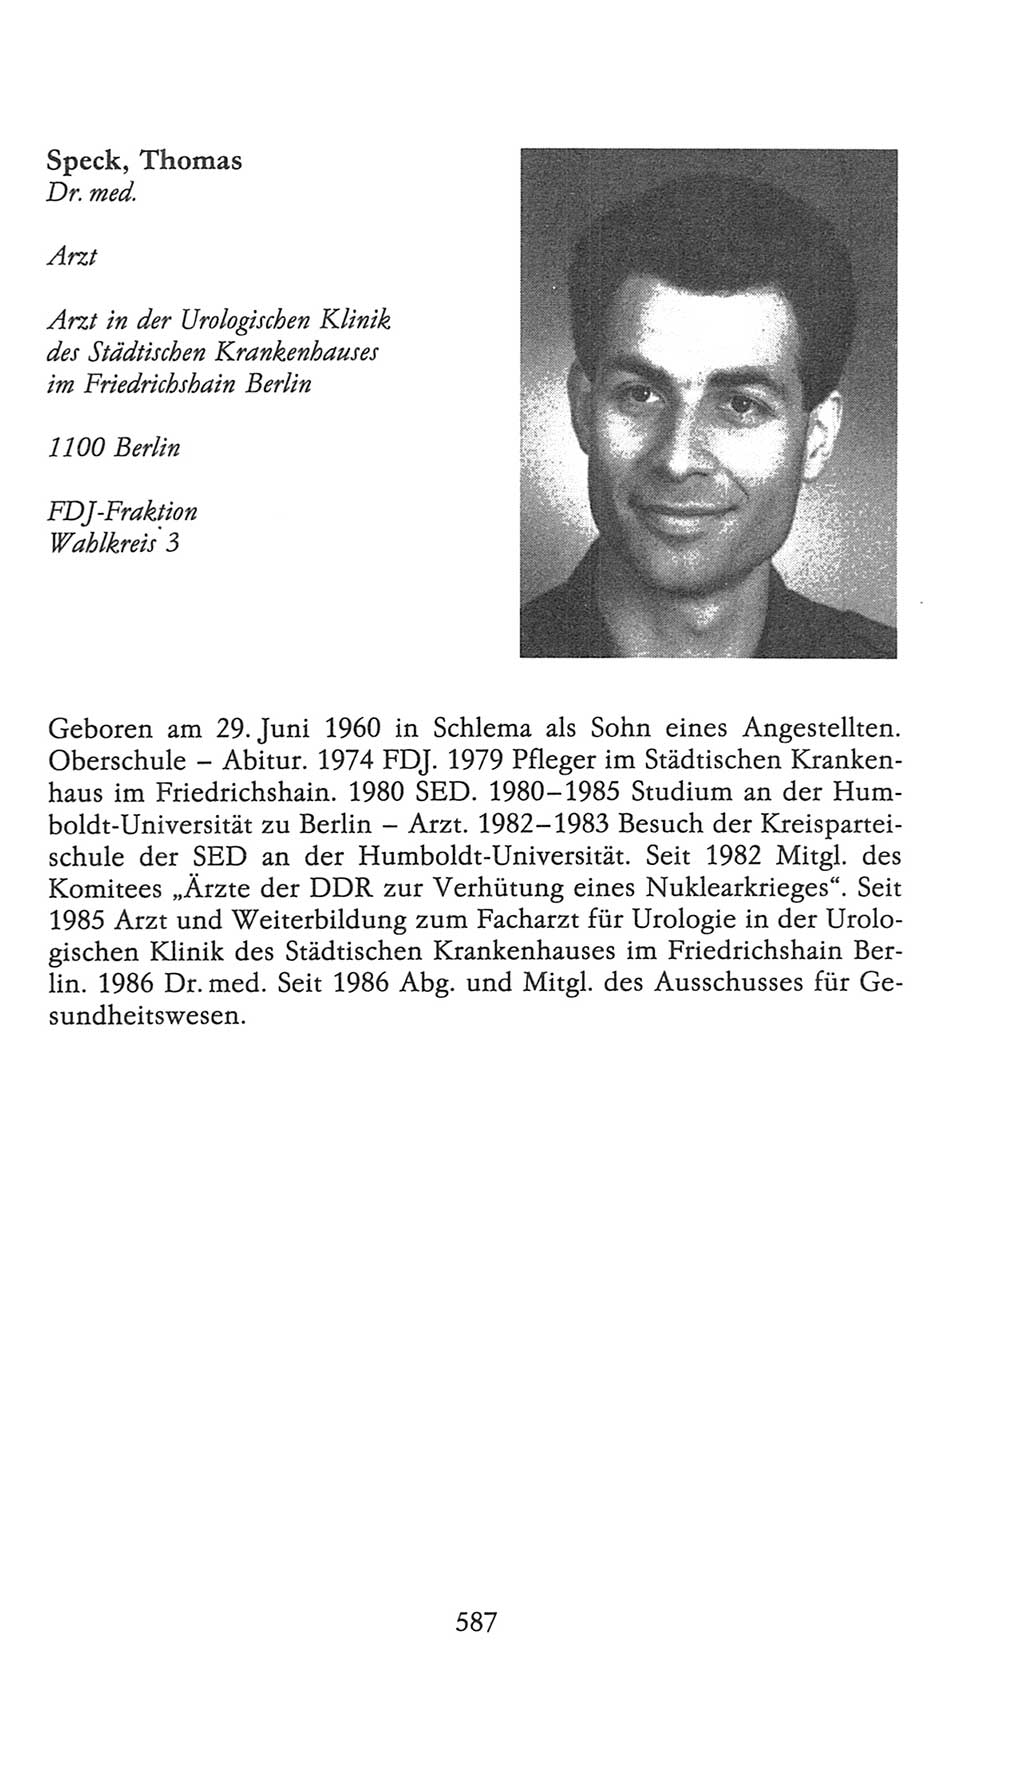 Volkskammer (VK) der Deutschen Demokratischen Republik (DDR), 9. Wahlperiode 1986-1990, Seite 587 (VK. DDR 9. WP. 1986-1990, S. 587)